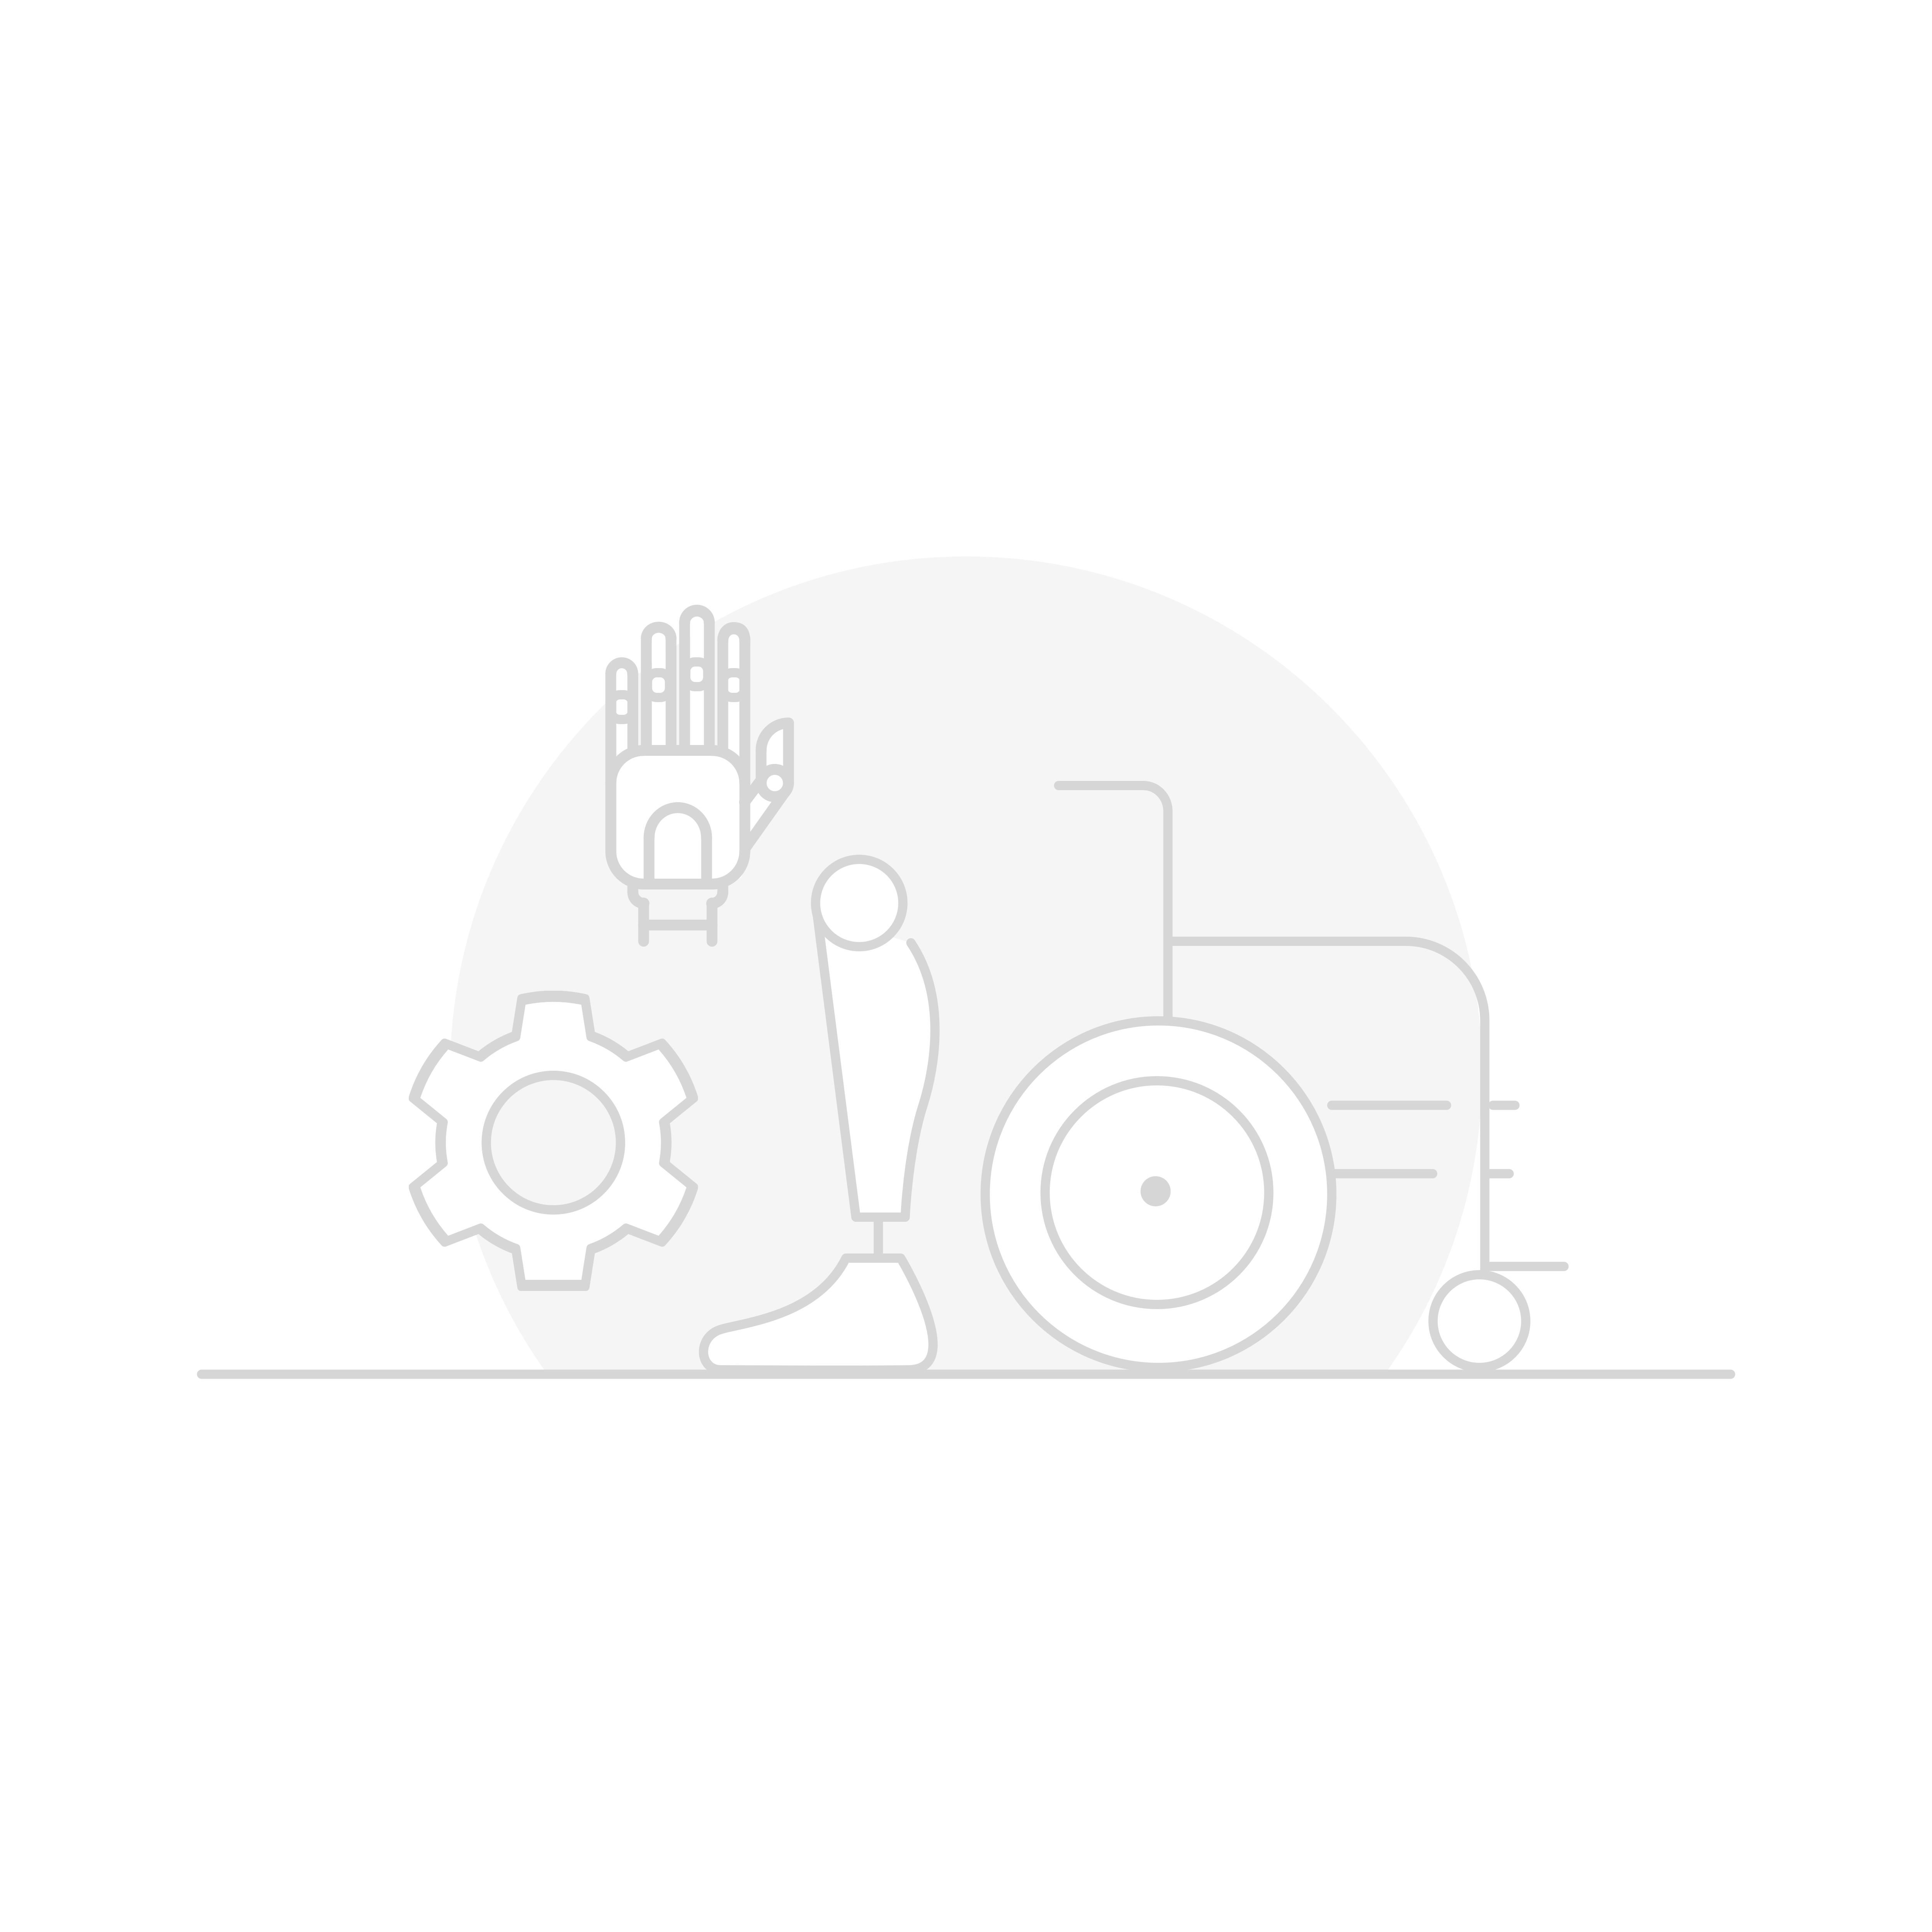 Reha-Kinderwagen und Rehahilfsmittel-470G71